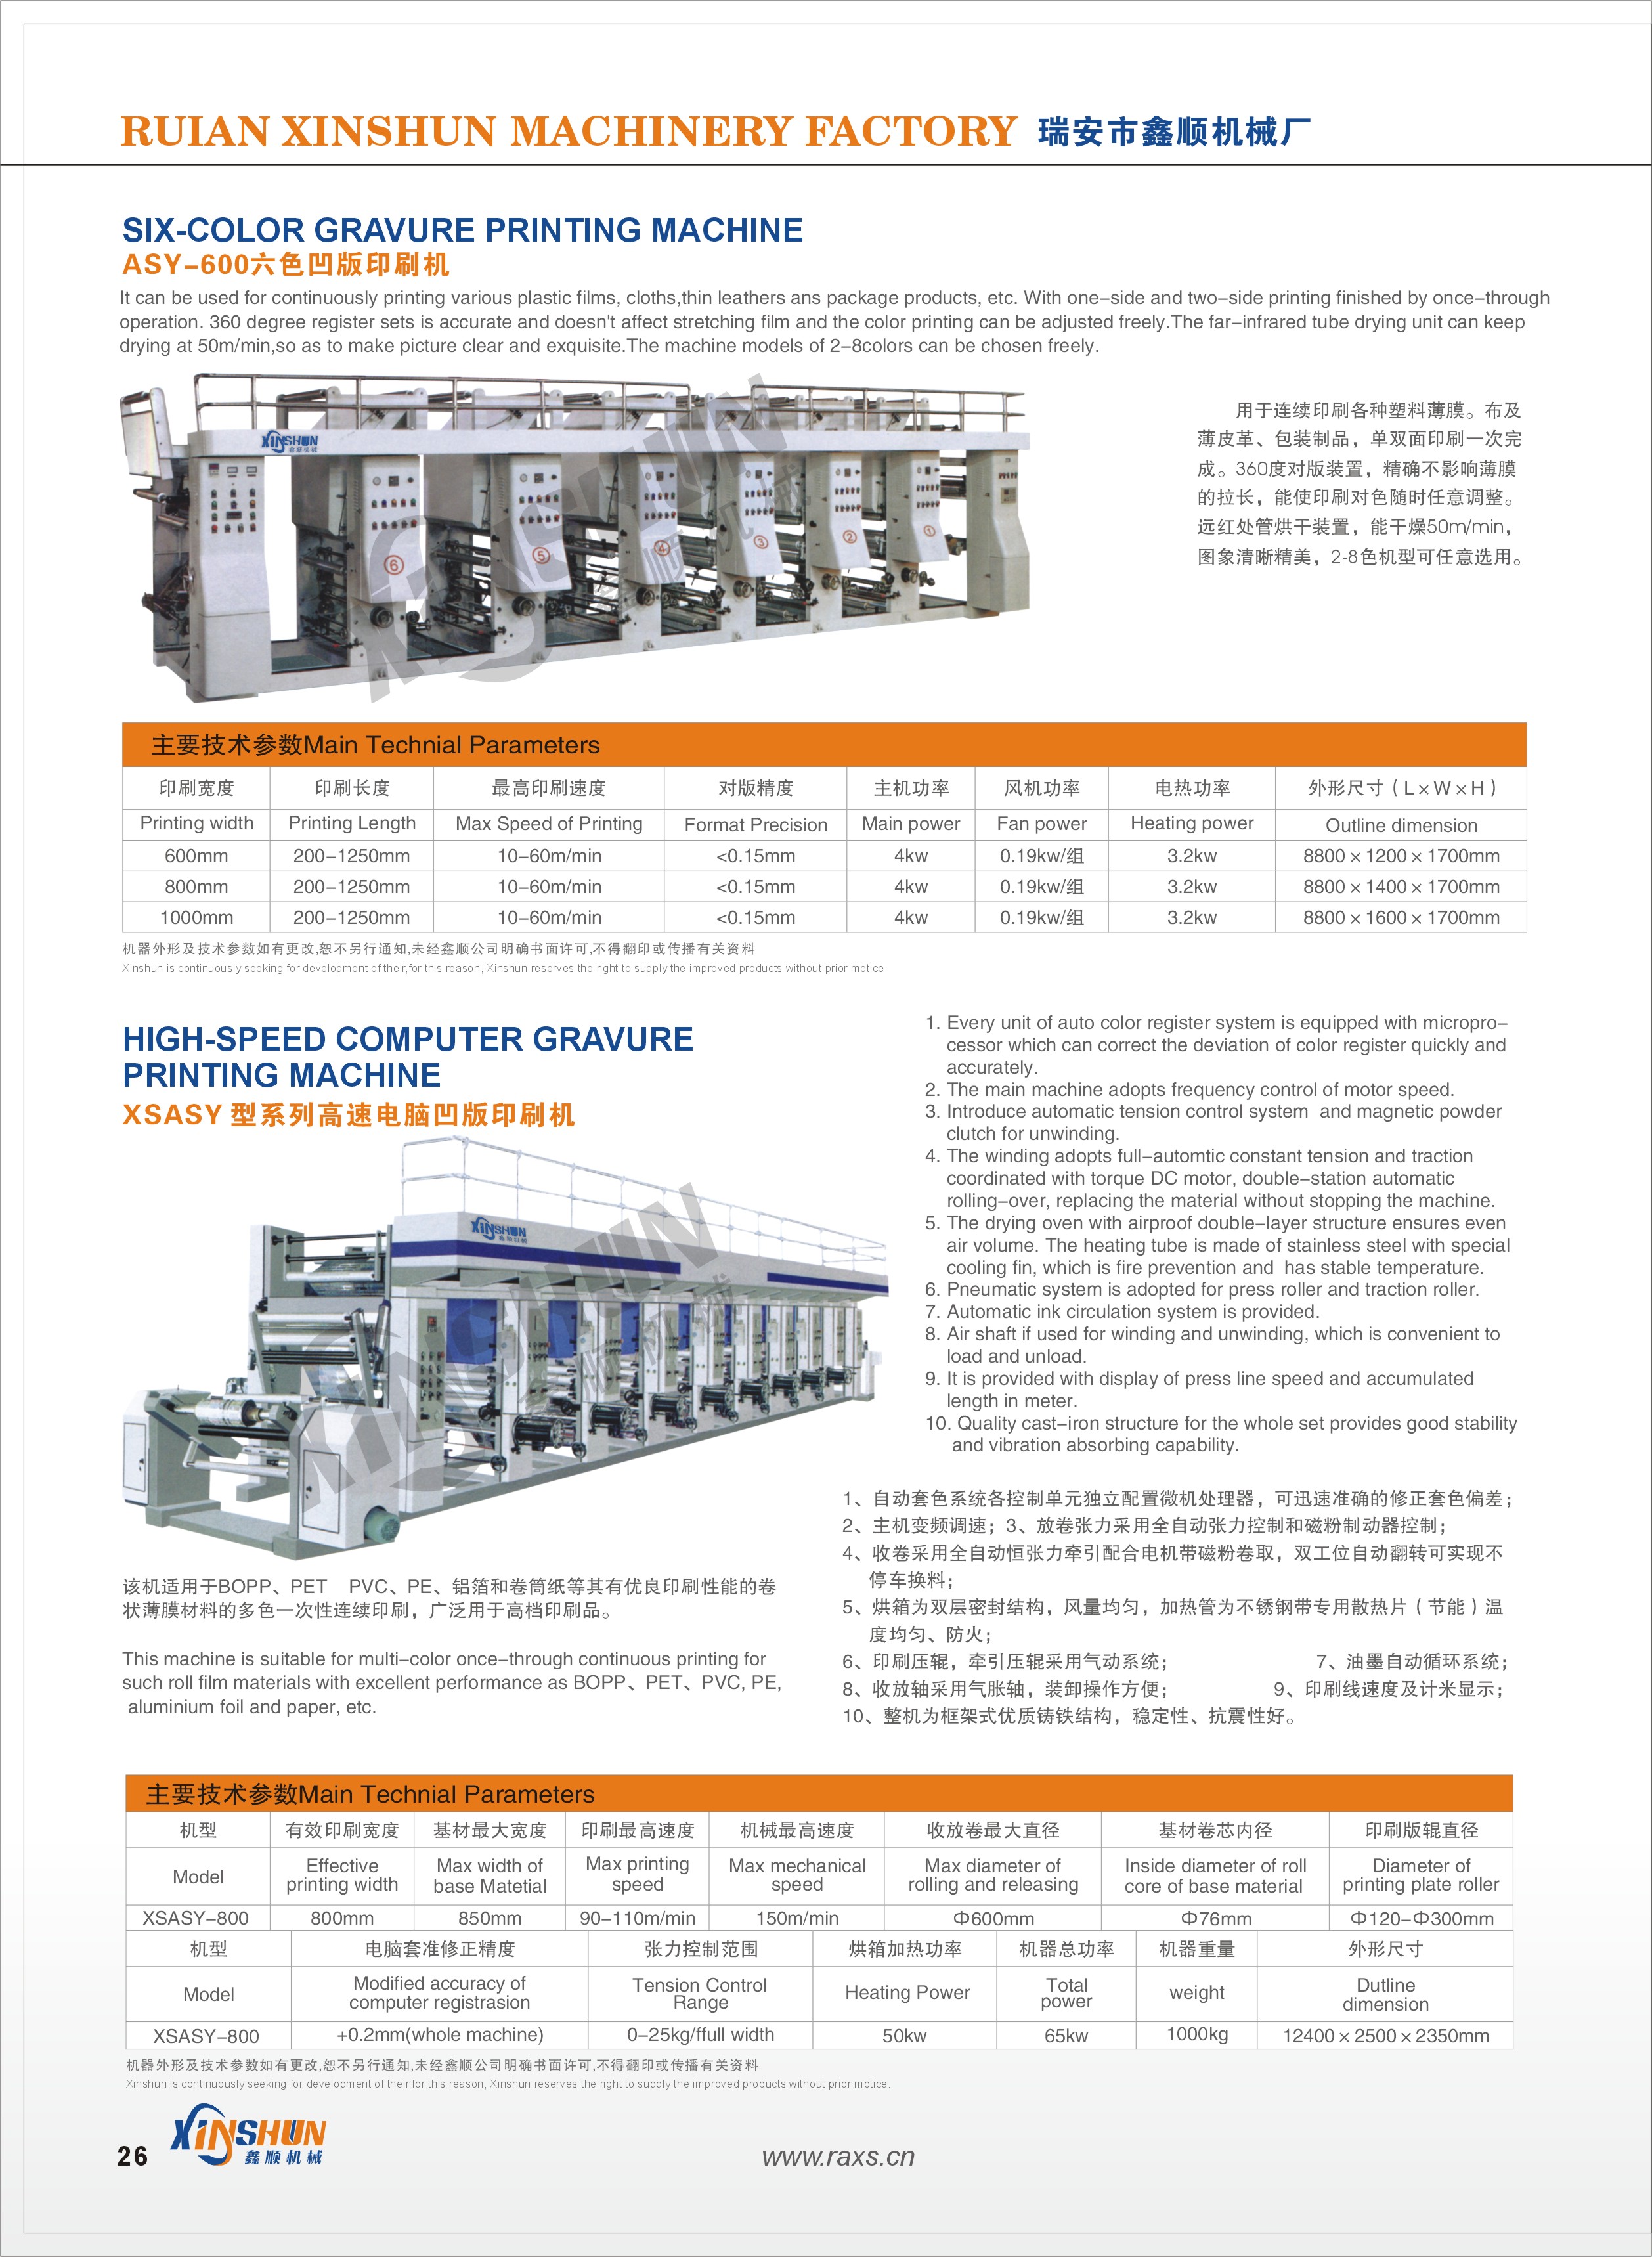 Ruian Xinshun High Speed Gravure Printing Machine 